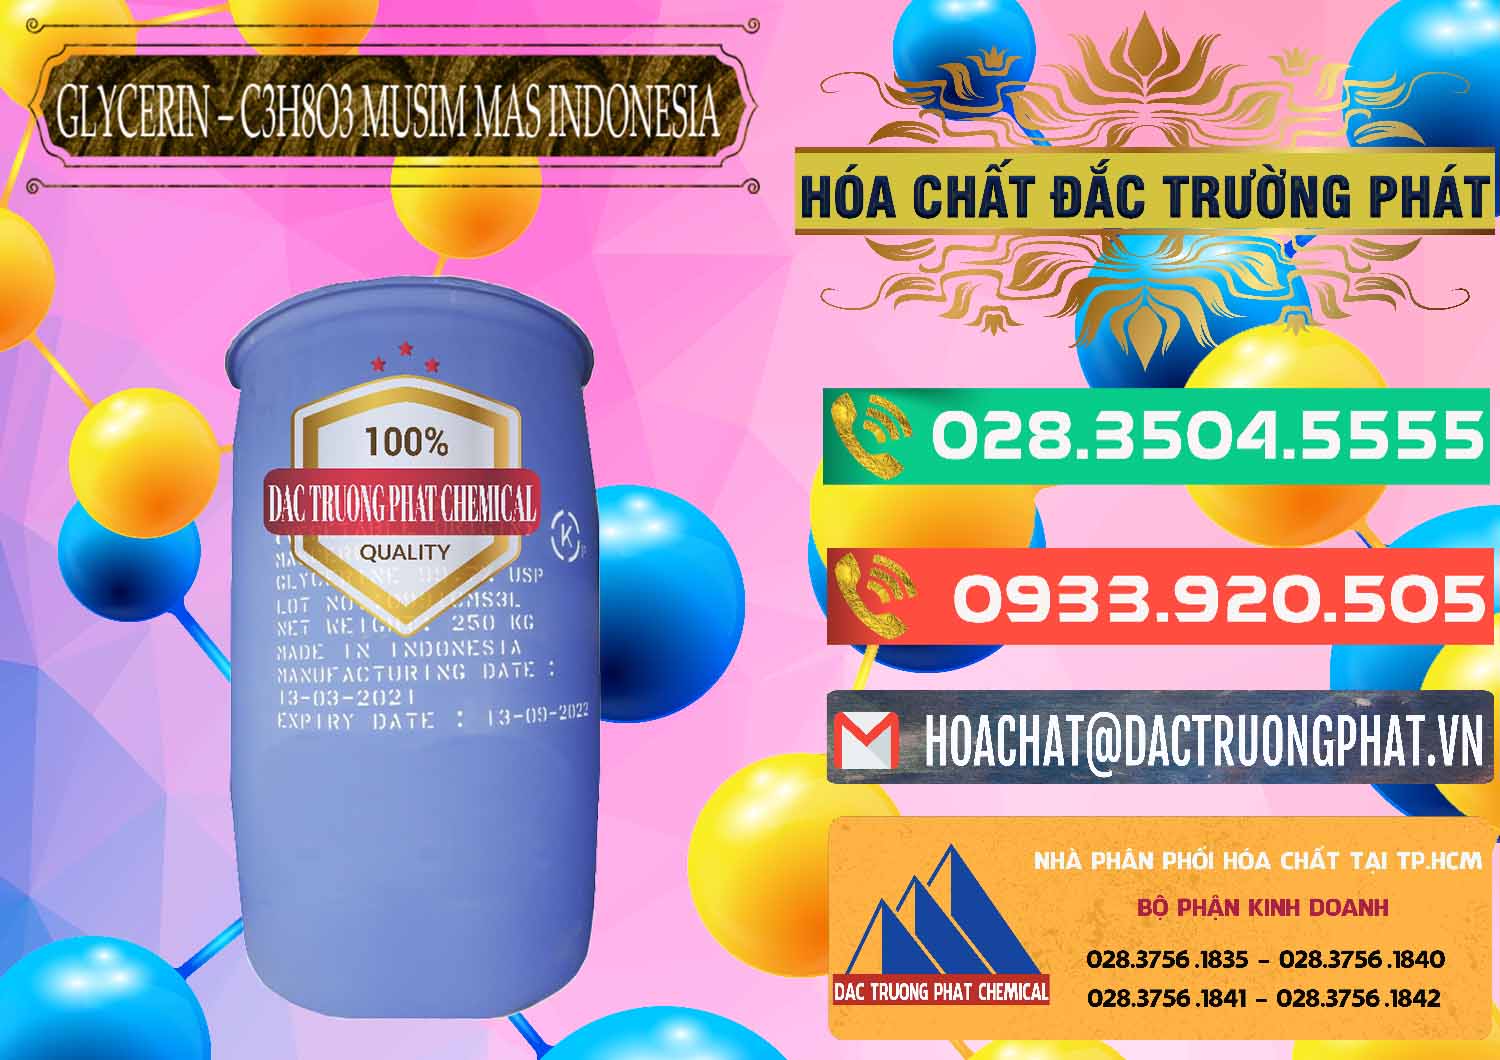 Đơn vị chuyên bán - phân phối Glycerin – C3H8O3 99.7% Musim Mas Indonesia - 0272 - Chuyên cung cấp và bán hóa chất tại TP.HCM - congtyhoachat.com.vn